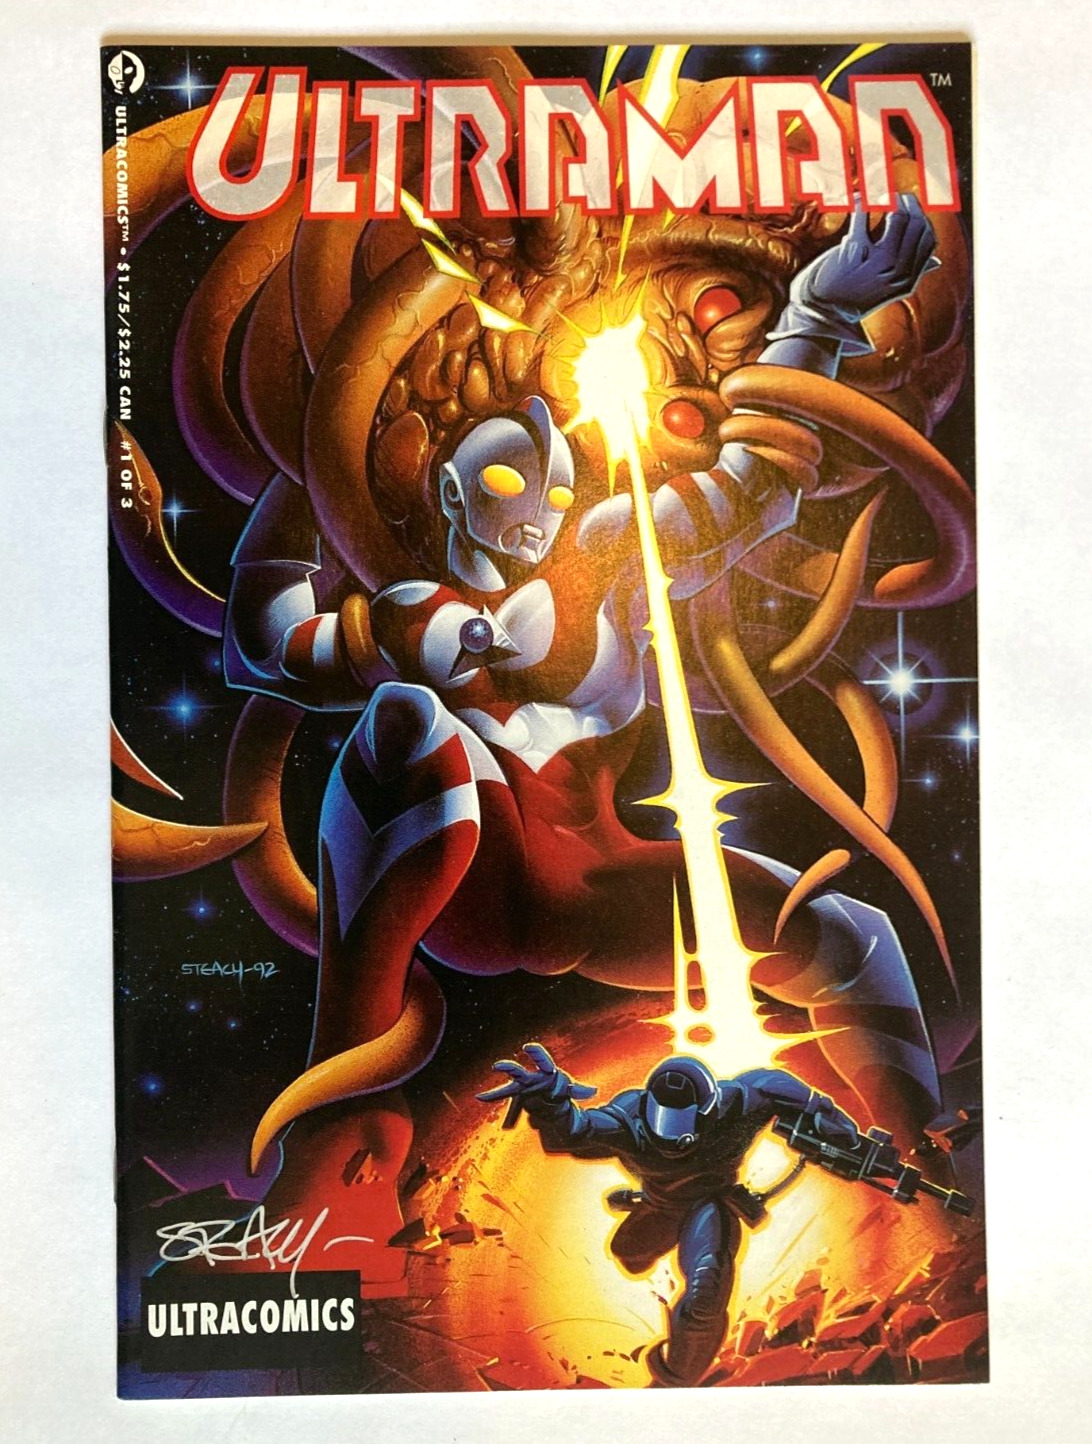 Ultraman #1 Ultraman Comics 1993 SIGNED by Ken Steacy Cover Artist